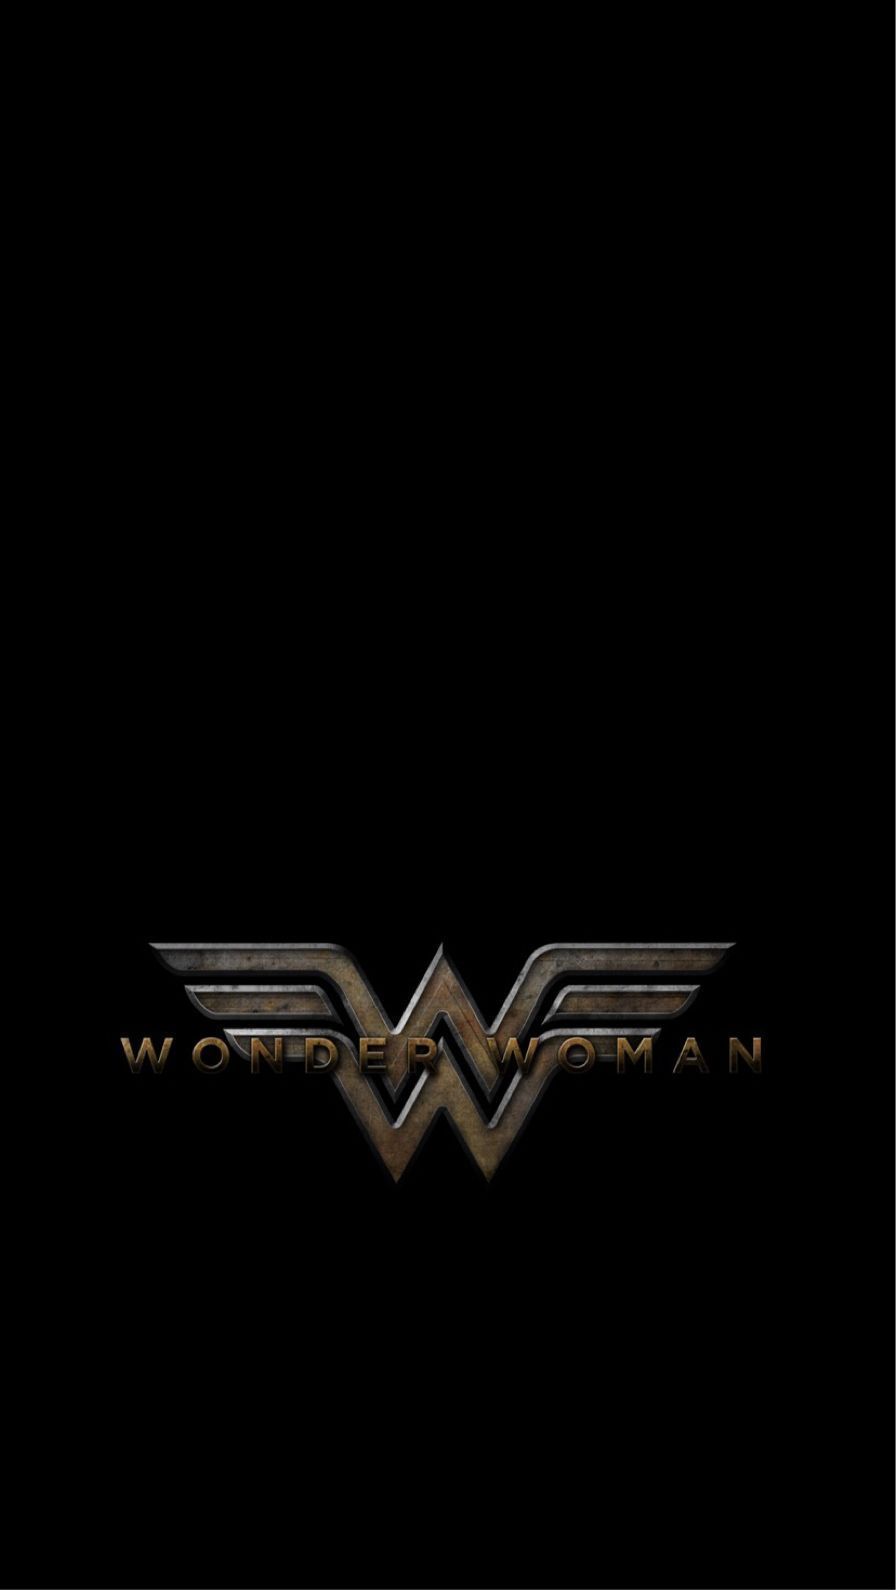 iPhone wallpaper. Phone wallpaper. Wonder Woman and Comic. Wonder woman, iPhone wallpaper, iPhone background image